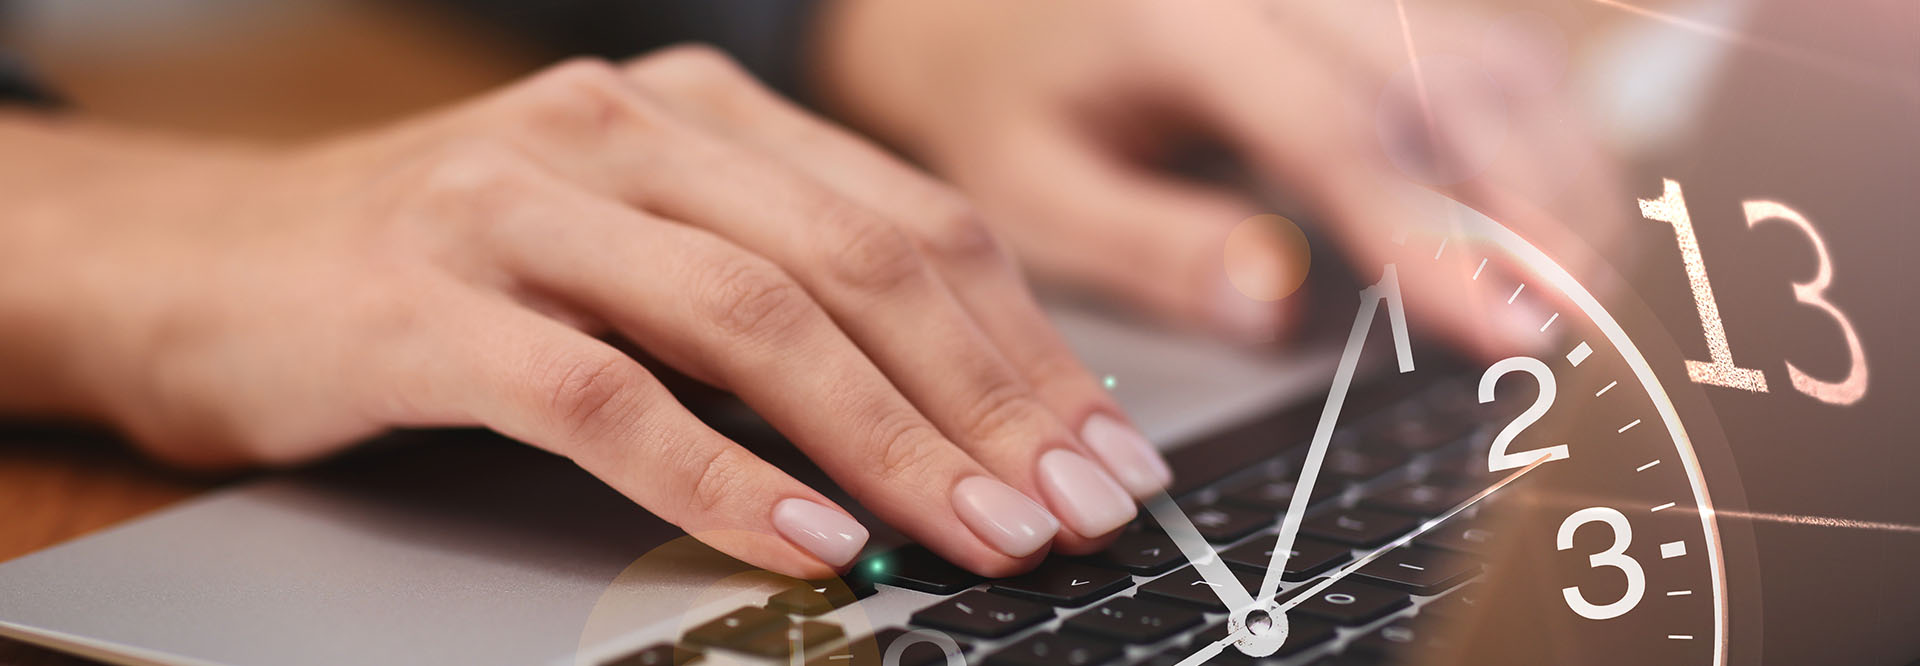 Die Nahaufnahme von weiblichen Händen, die auf der Tastatur eines Laptops tippen wird überblendet von dem Zifferblatt einer Uhr und einem Kalenderblatt.